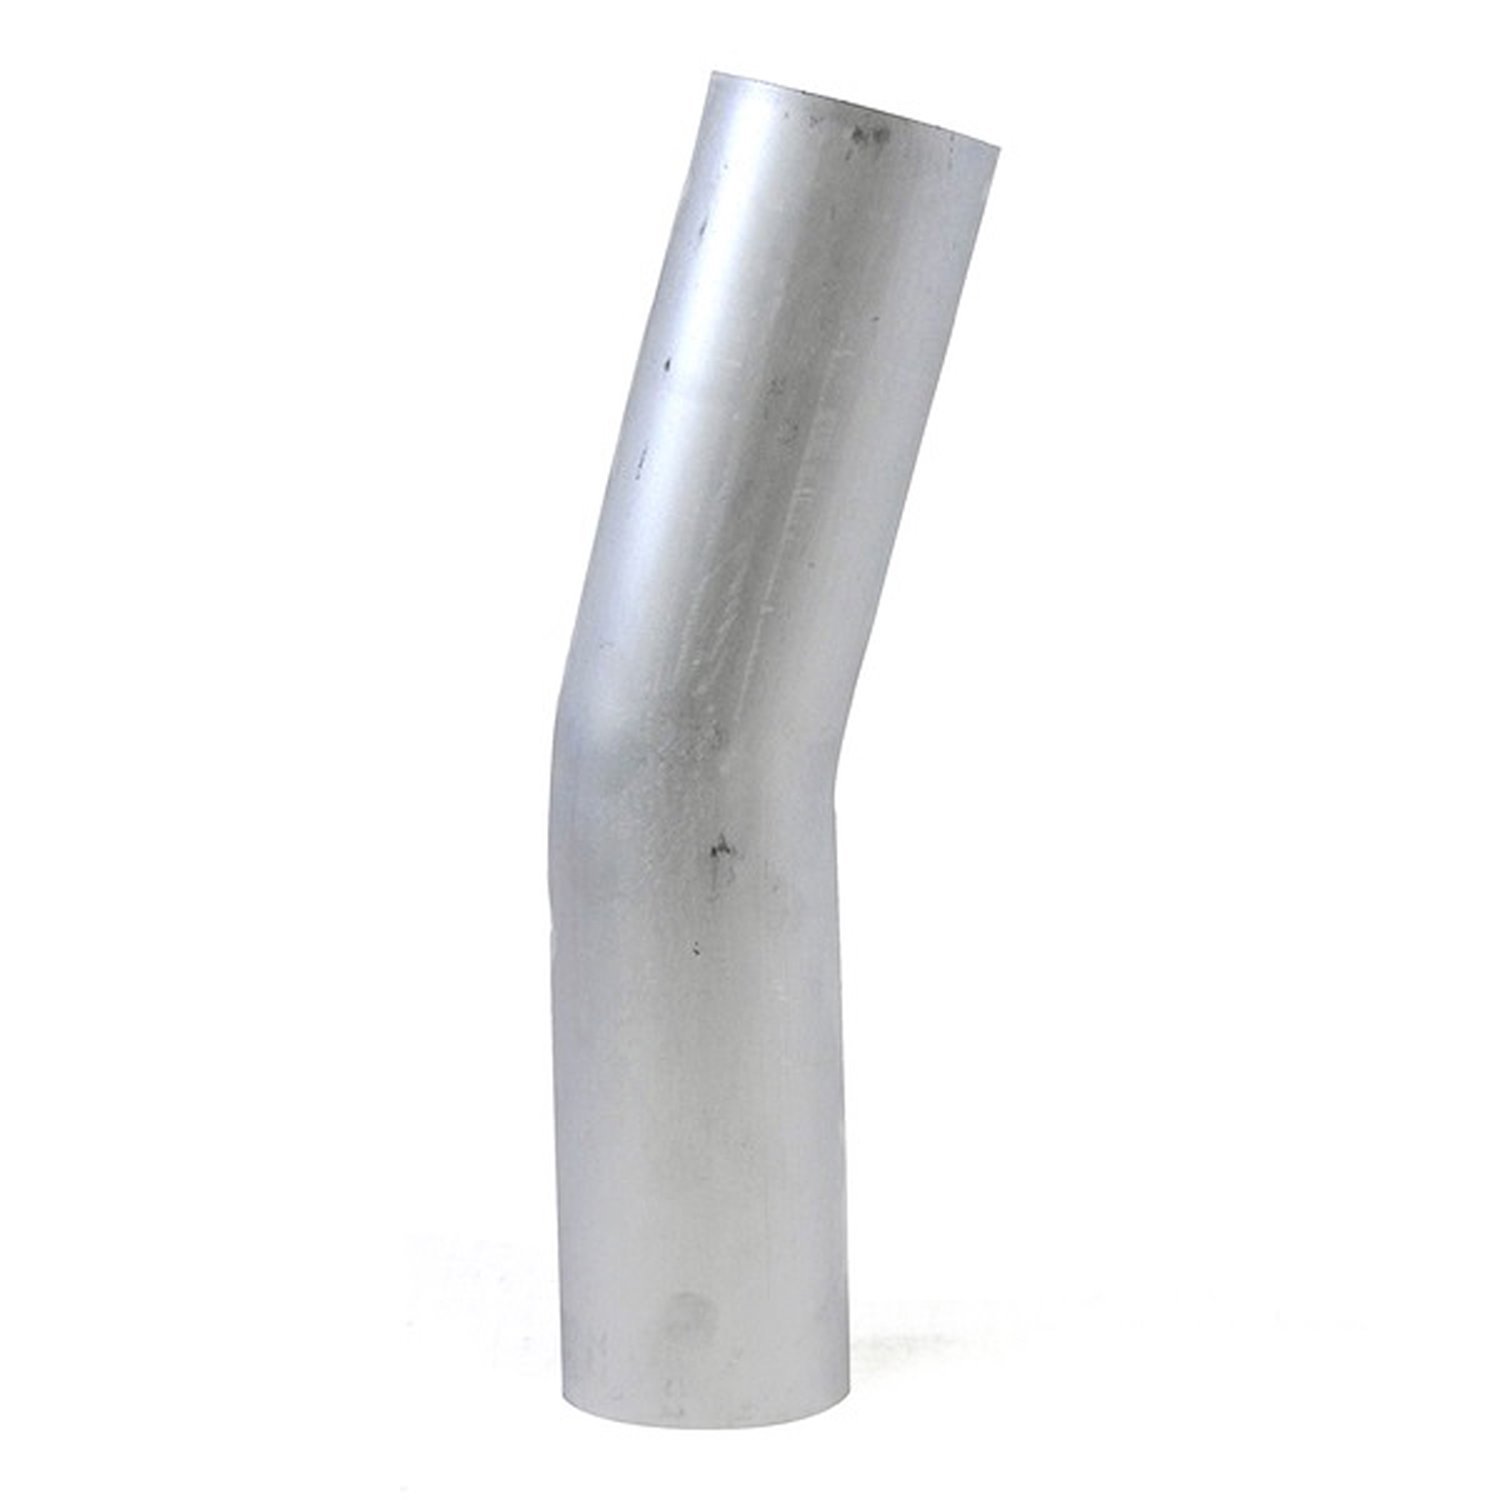 AT15-300-CLR-475 Aluminum Elbow Tube, 6061 Aluminum, 15-Degree Bend Elbow Tubing, 3 in. OD, Large Radius, 4-3/4 in. CLR